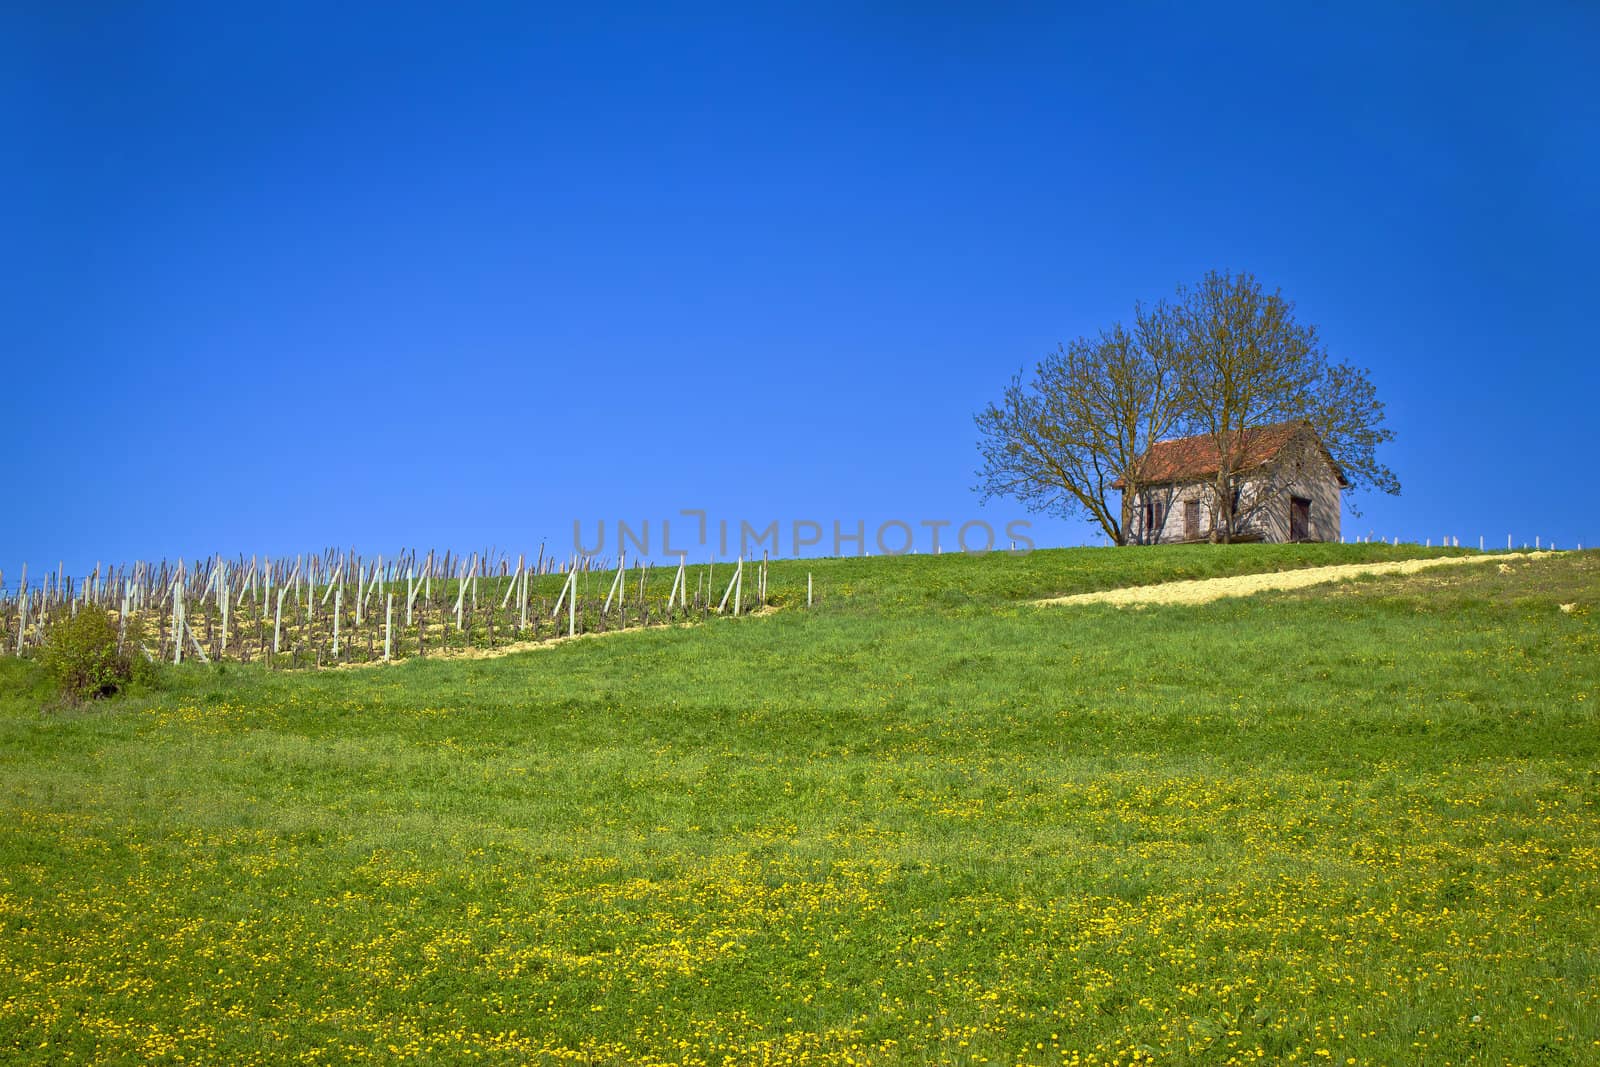 Cottage and vineyard on idyllic hill by xbrchx